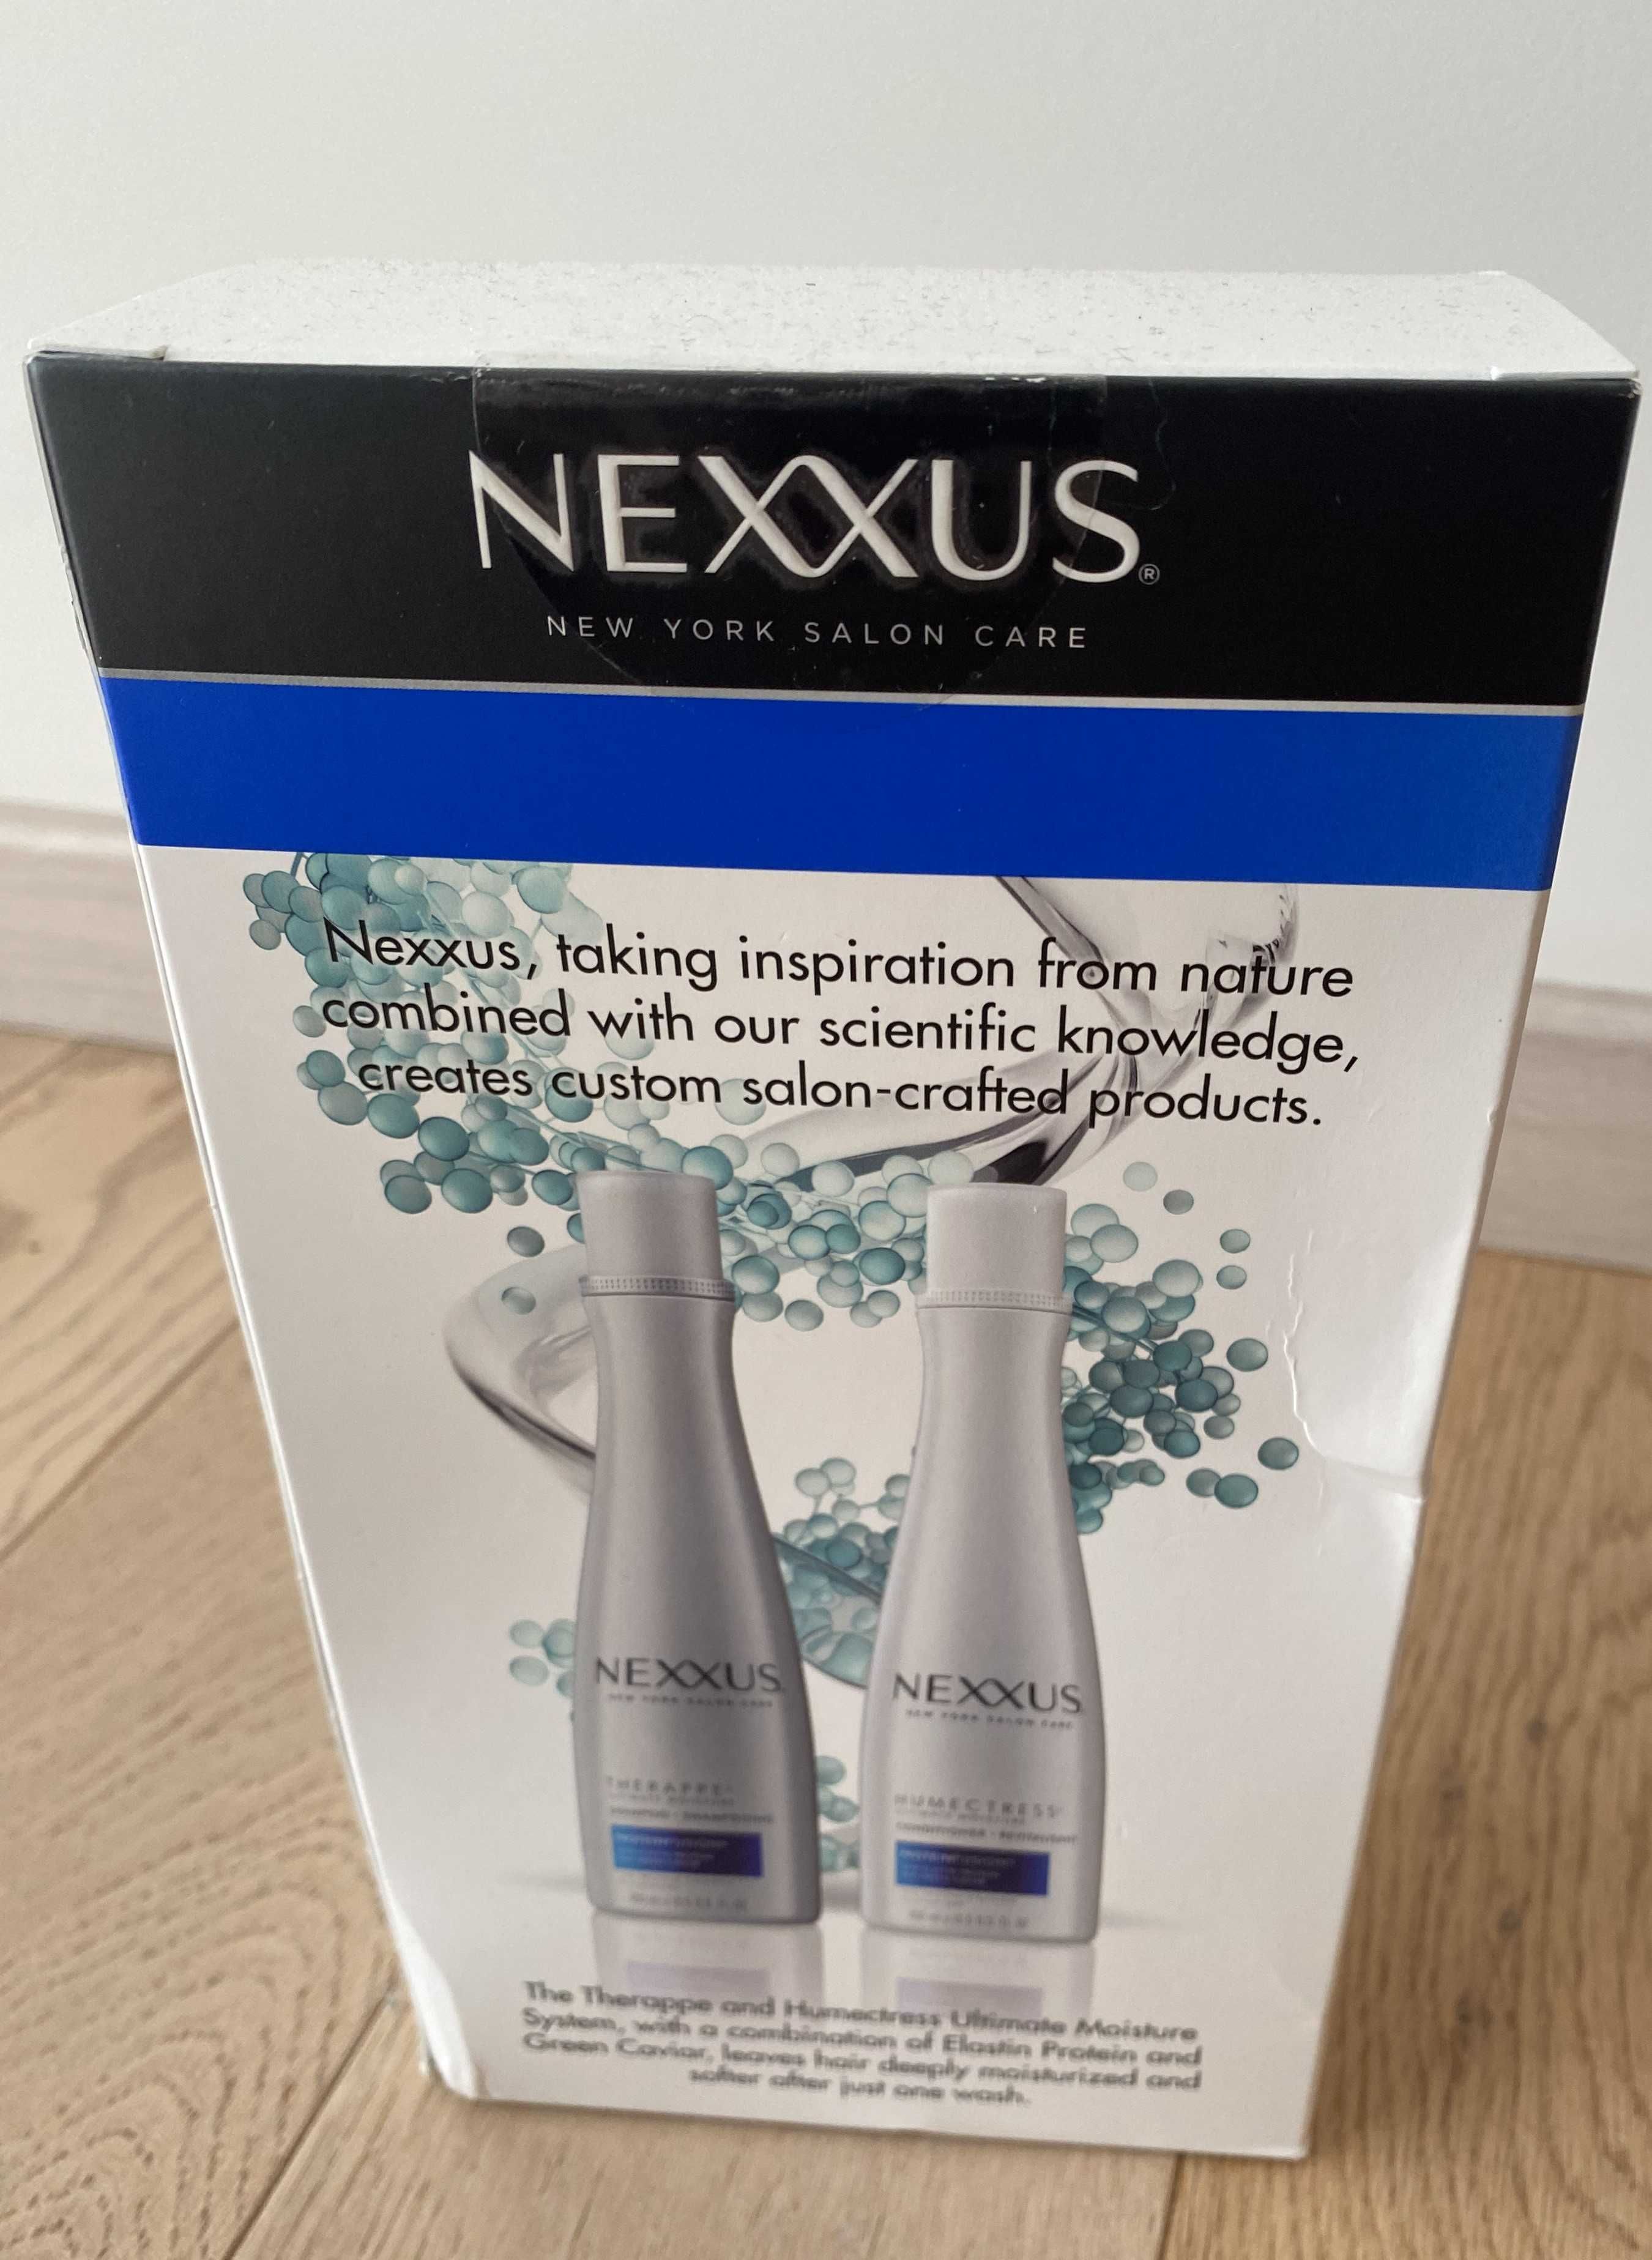 Продам NEXXUS США шампунь та кондиционер для волос.